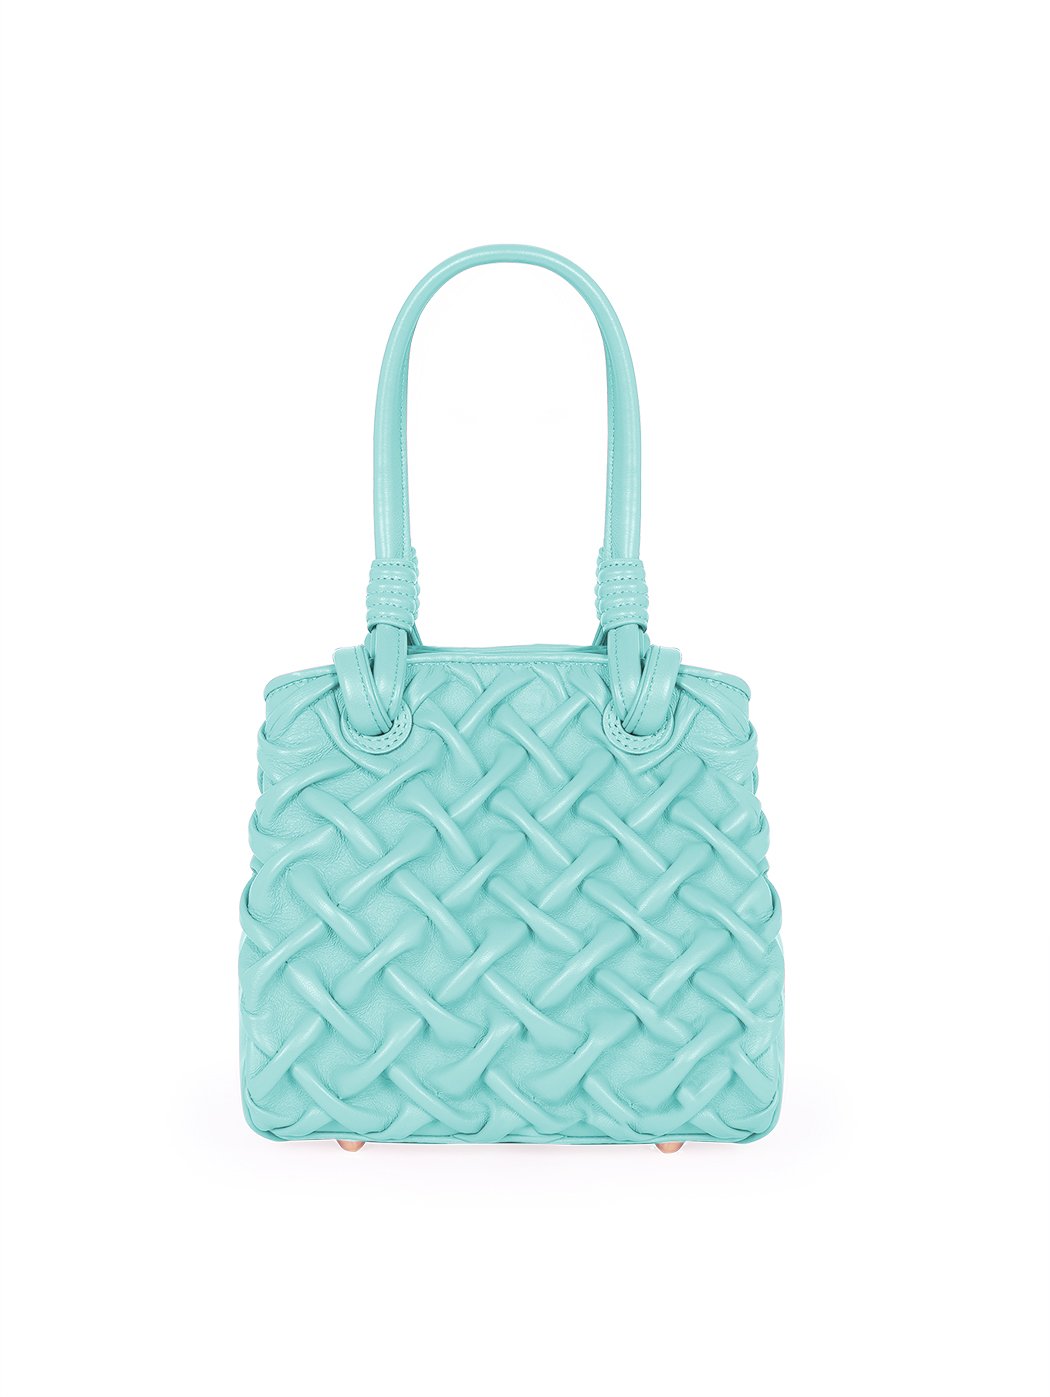 Женская плиссированная сумочка коллекции Poseidon цвета тиффани